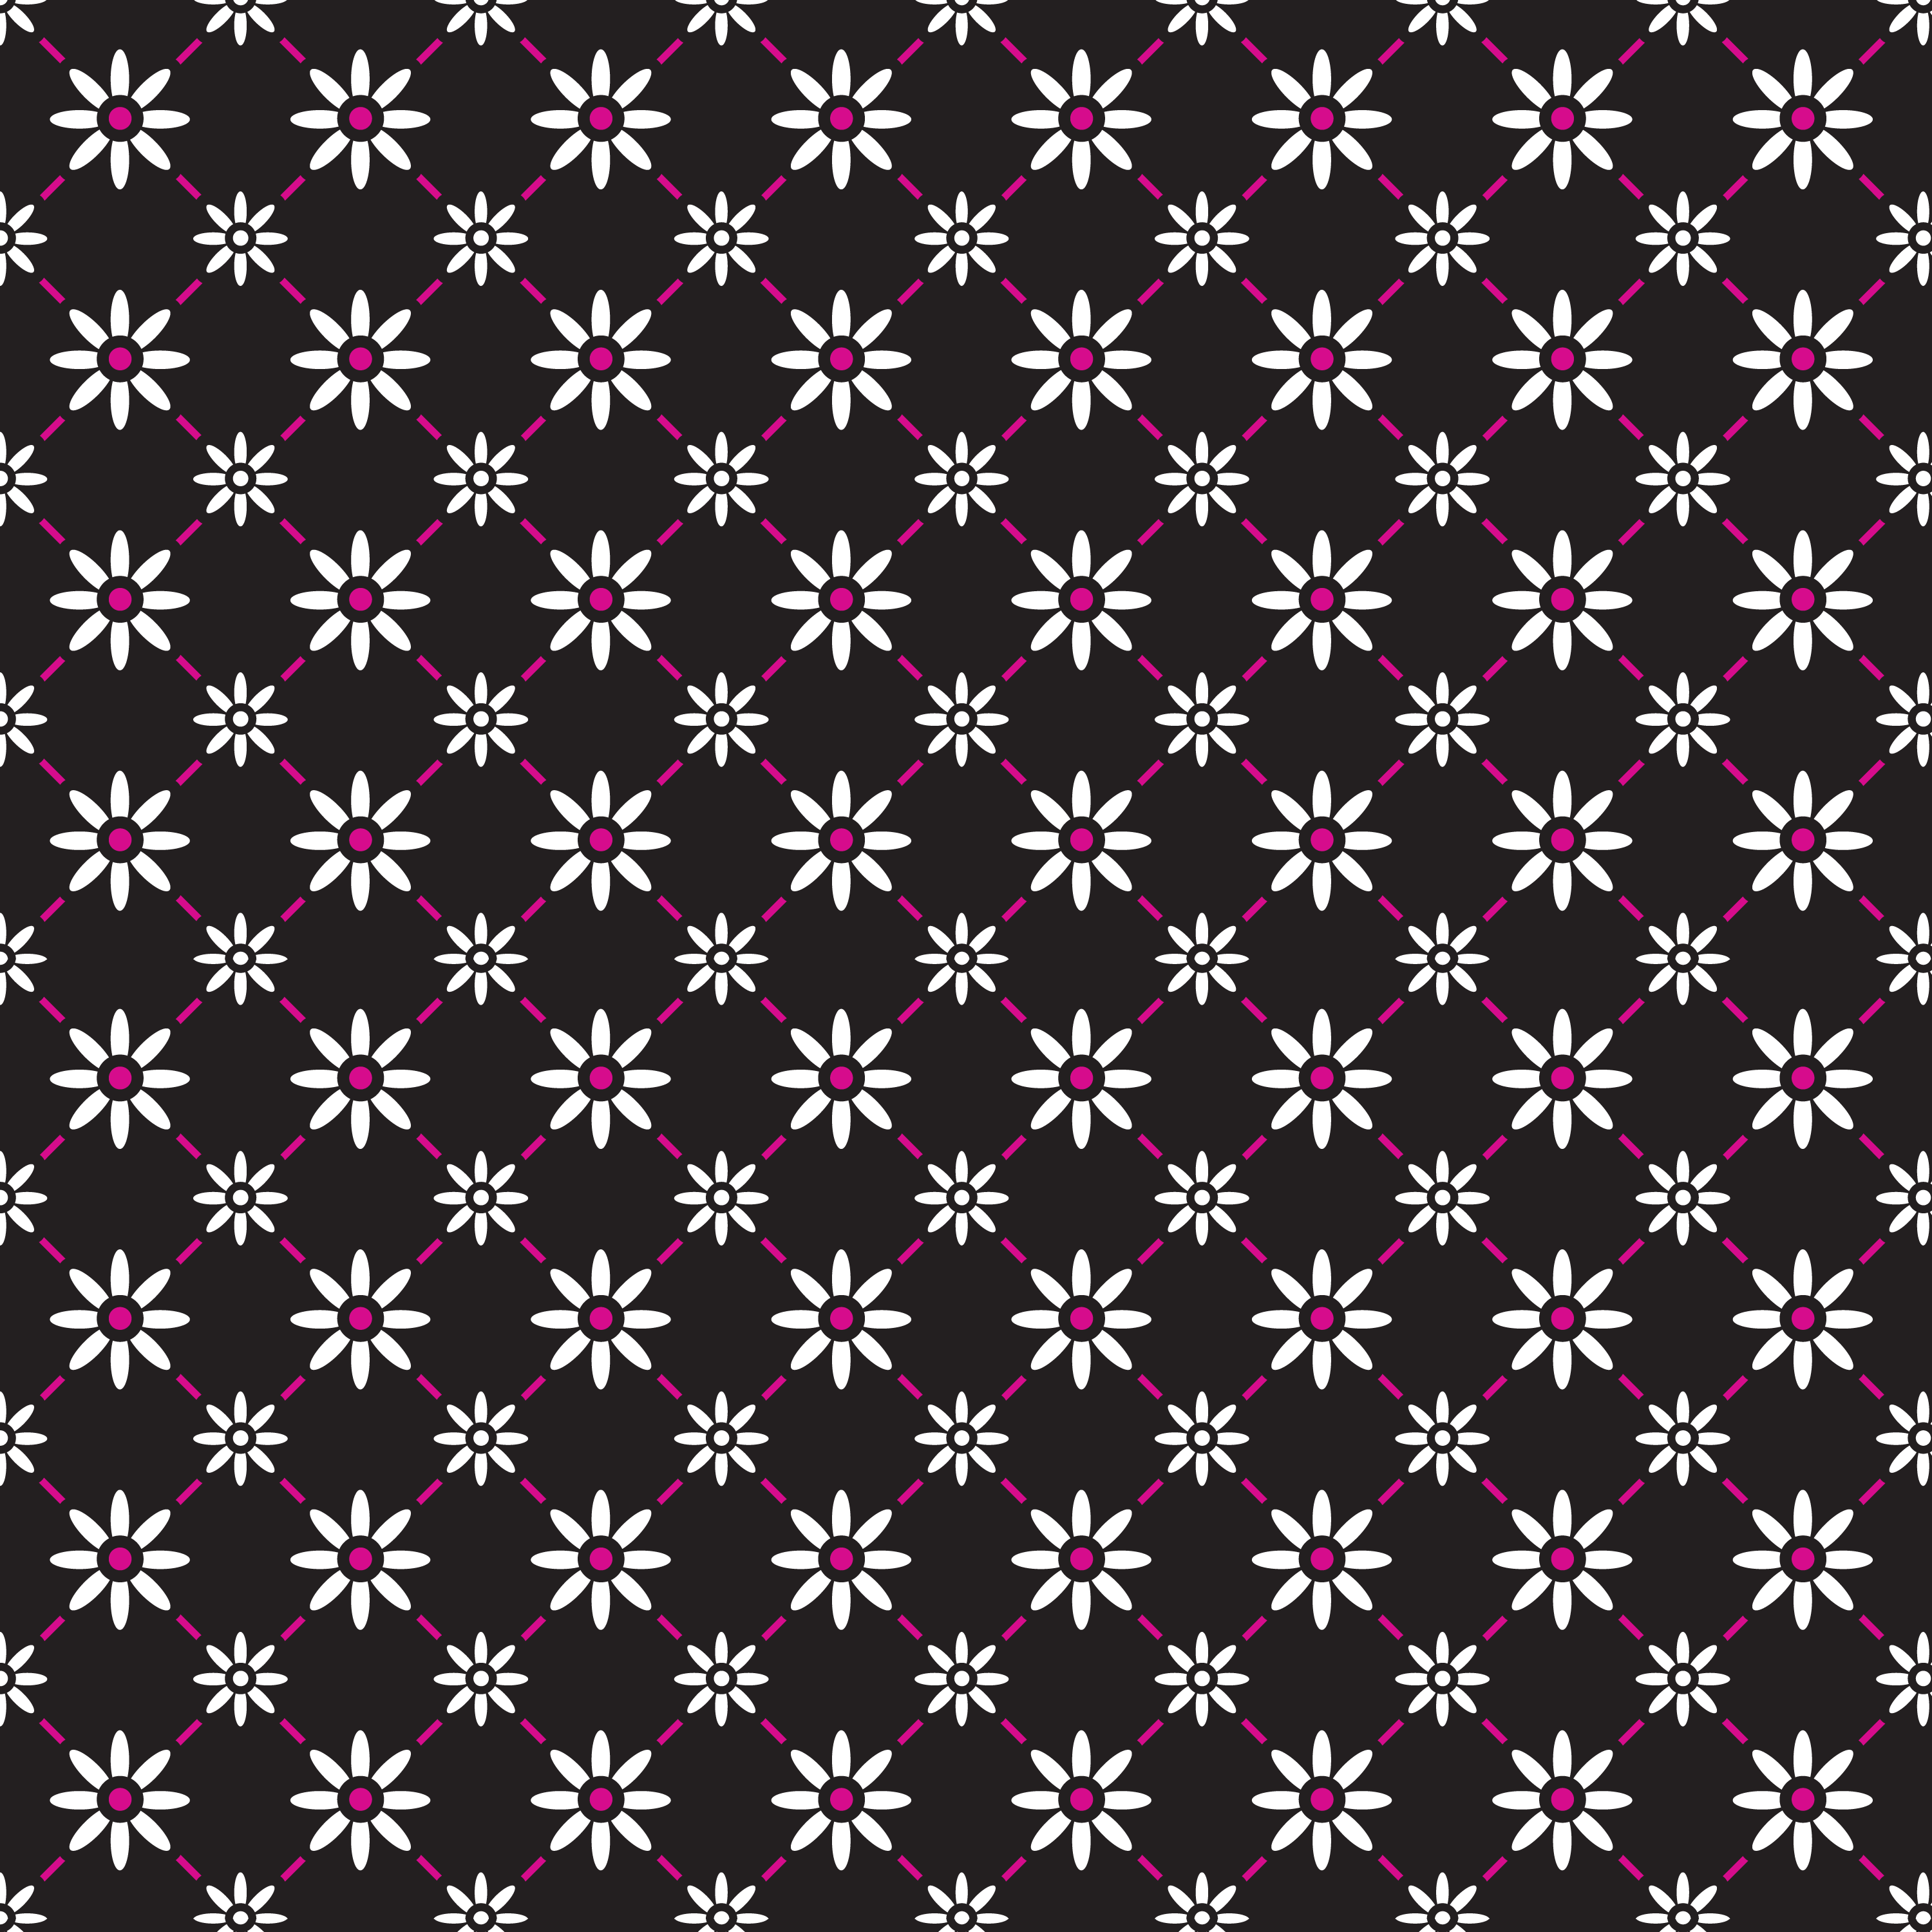 壁紙 背景イラスト 花の模様 柄 パターン No 149 大小の花 黒背景